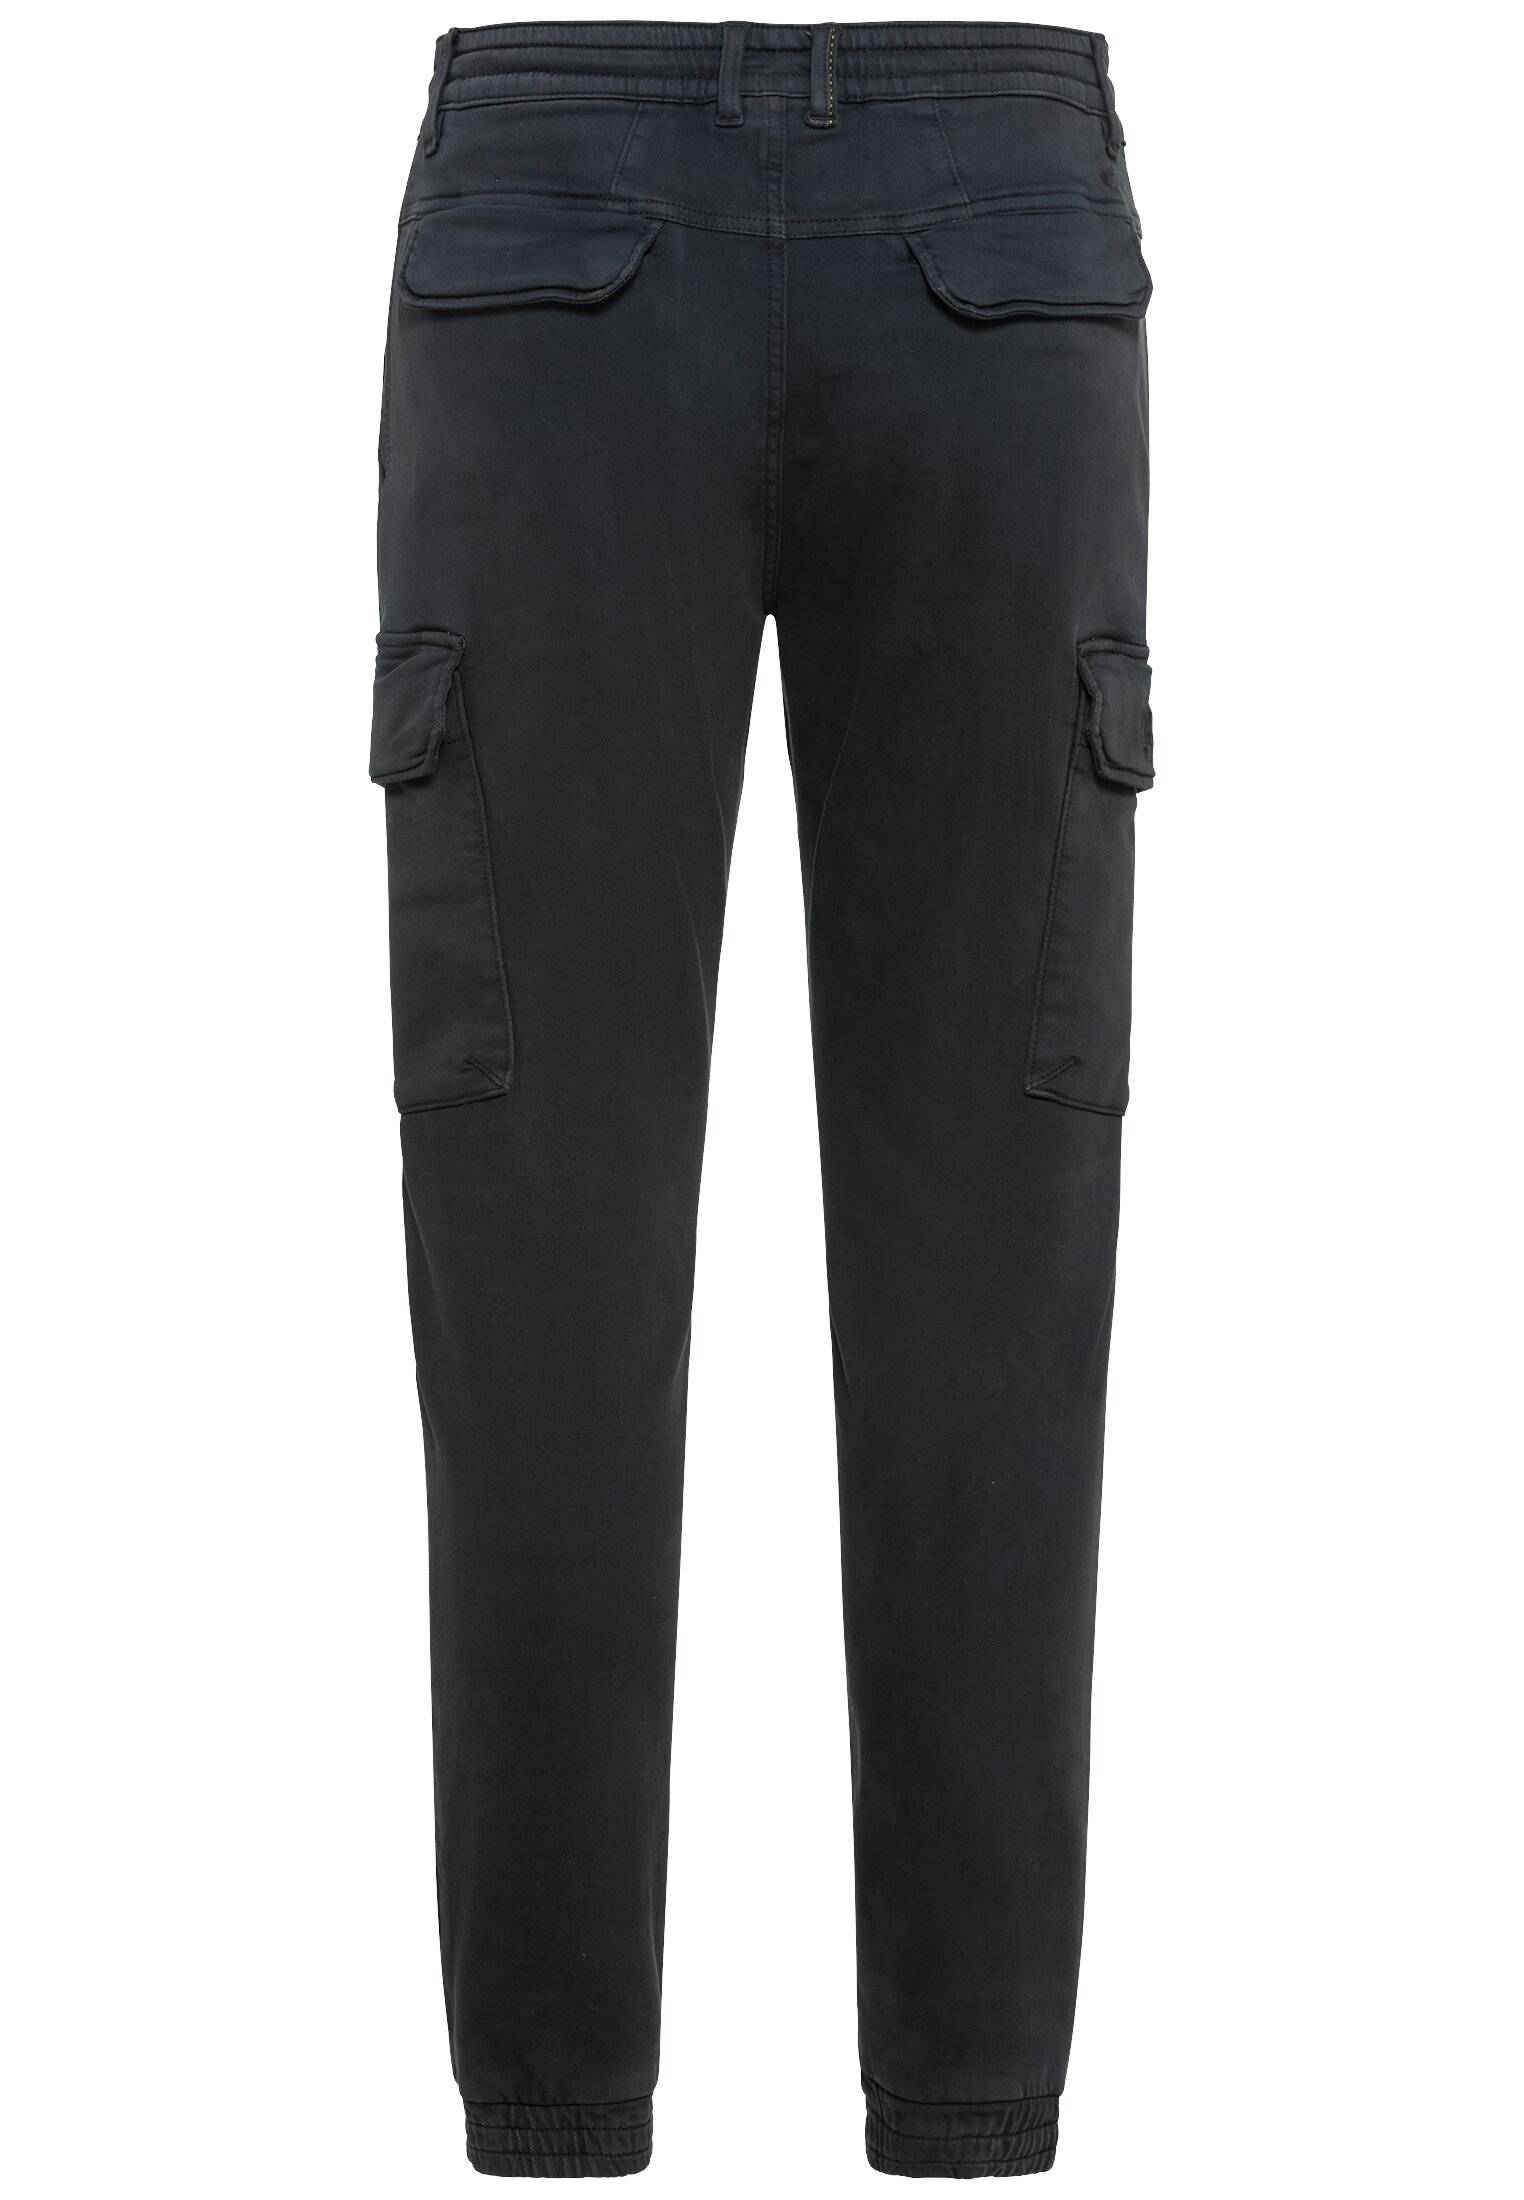 Мужские брюки Camel Active, серые, цвет серый, размер 40 - фото 2